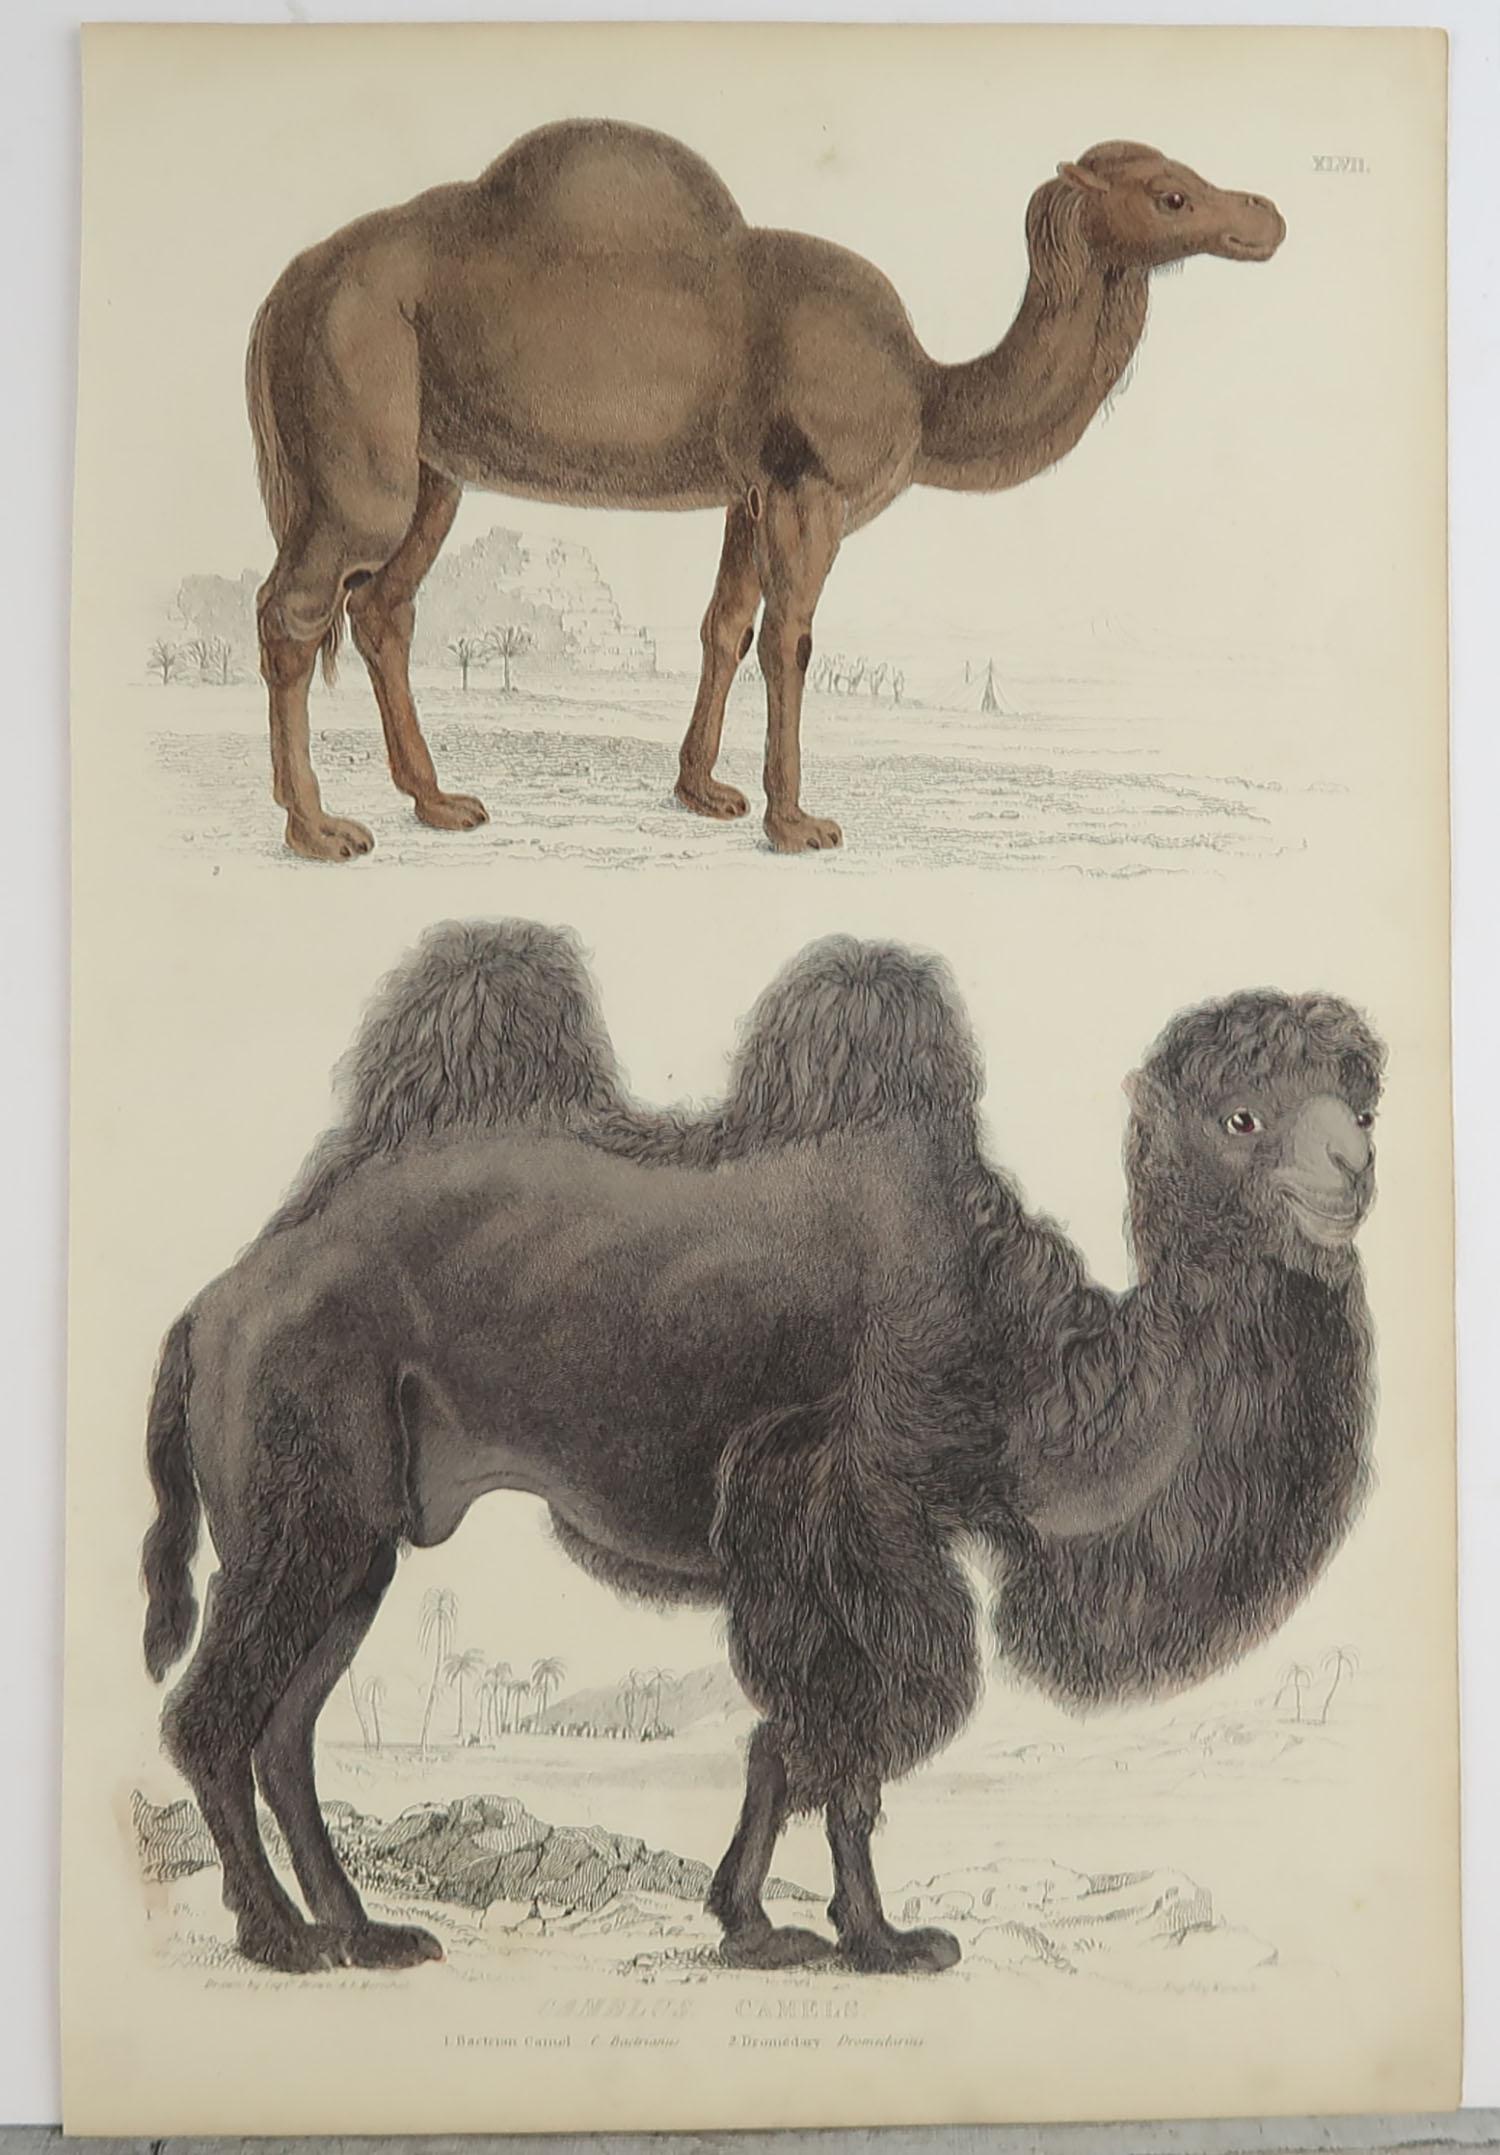 Folk Art Large Original Antique Natural History Print, Camels, circa 1835